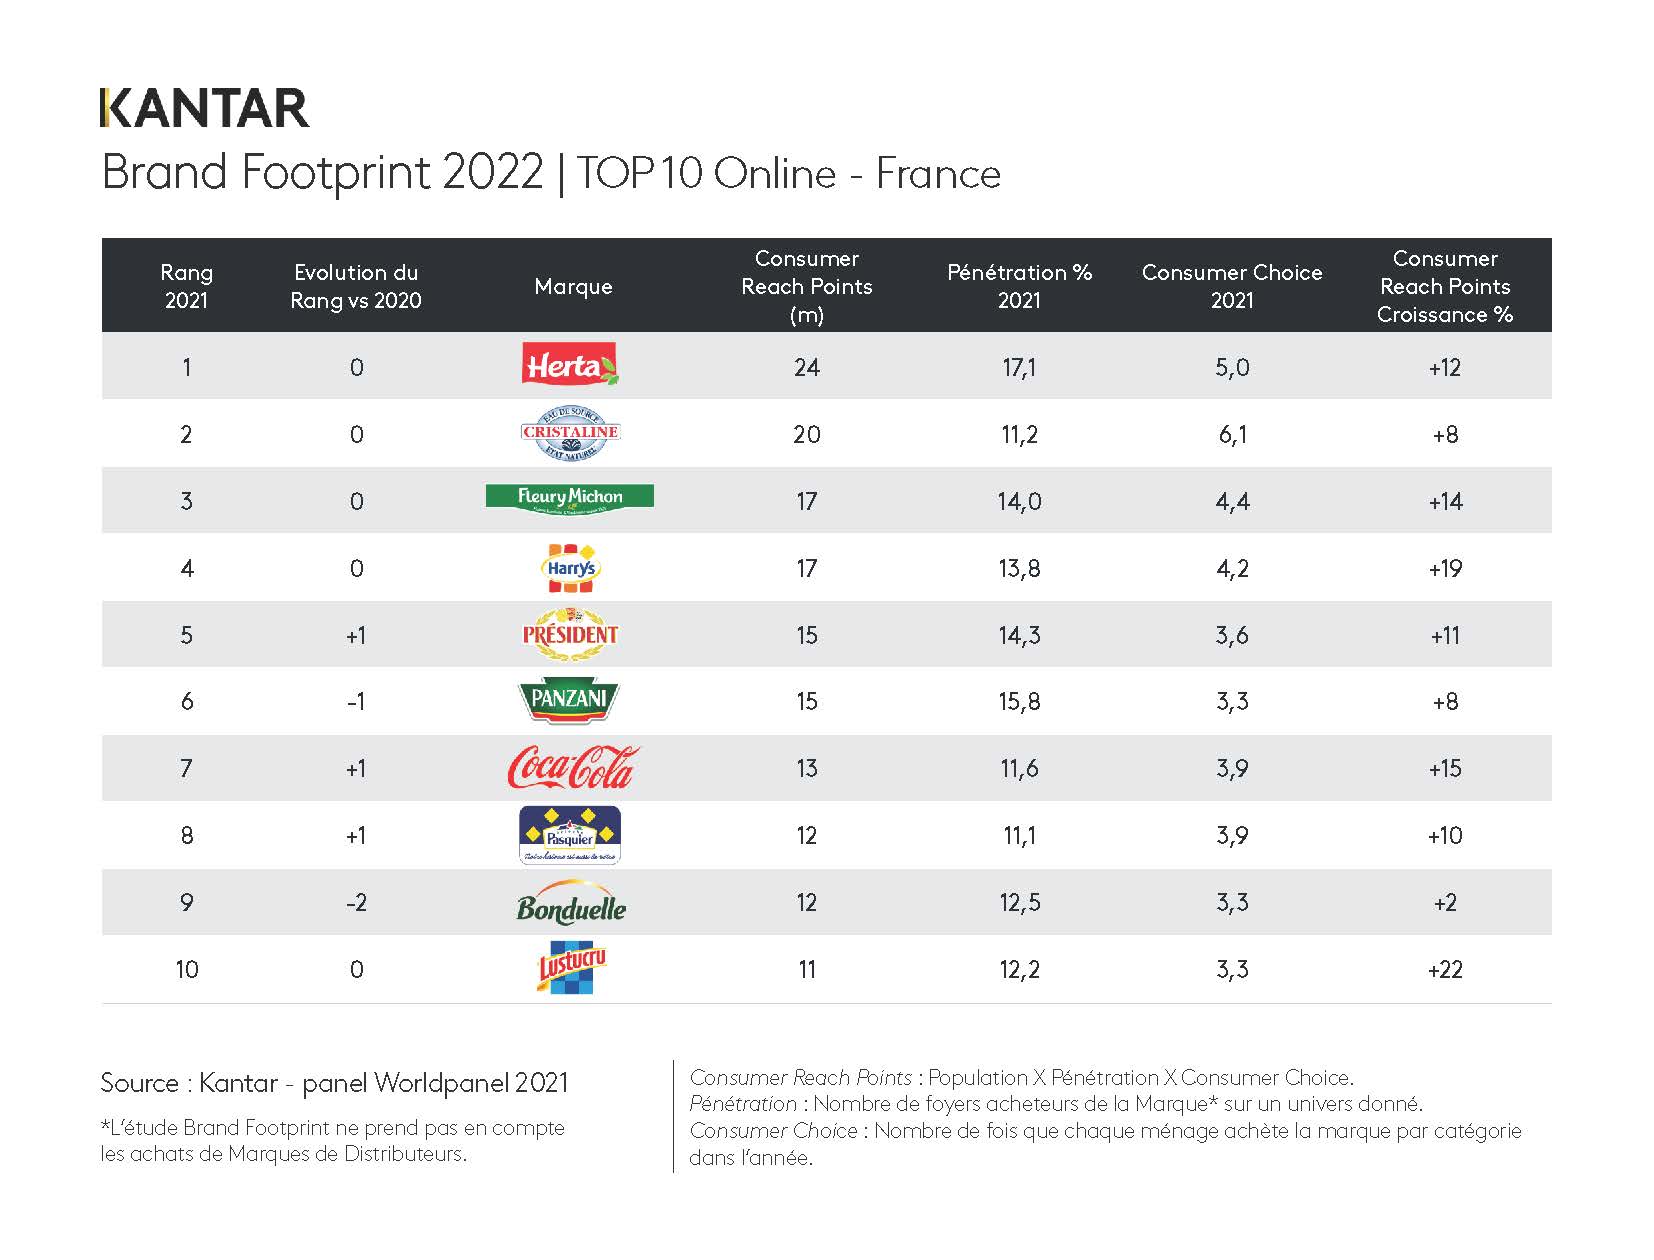 Classement Top 10 France Online Brand Footprint